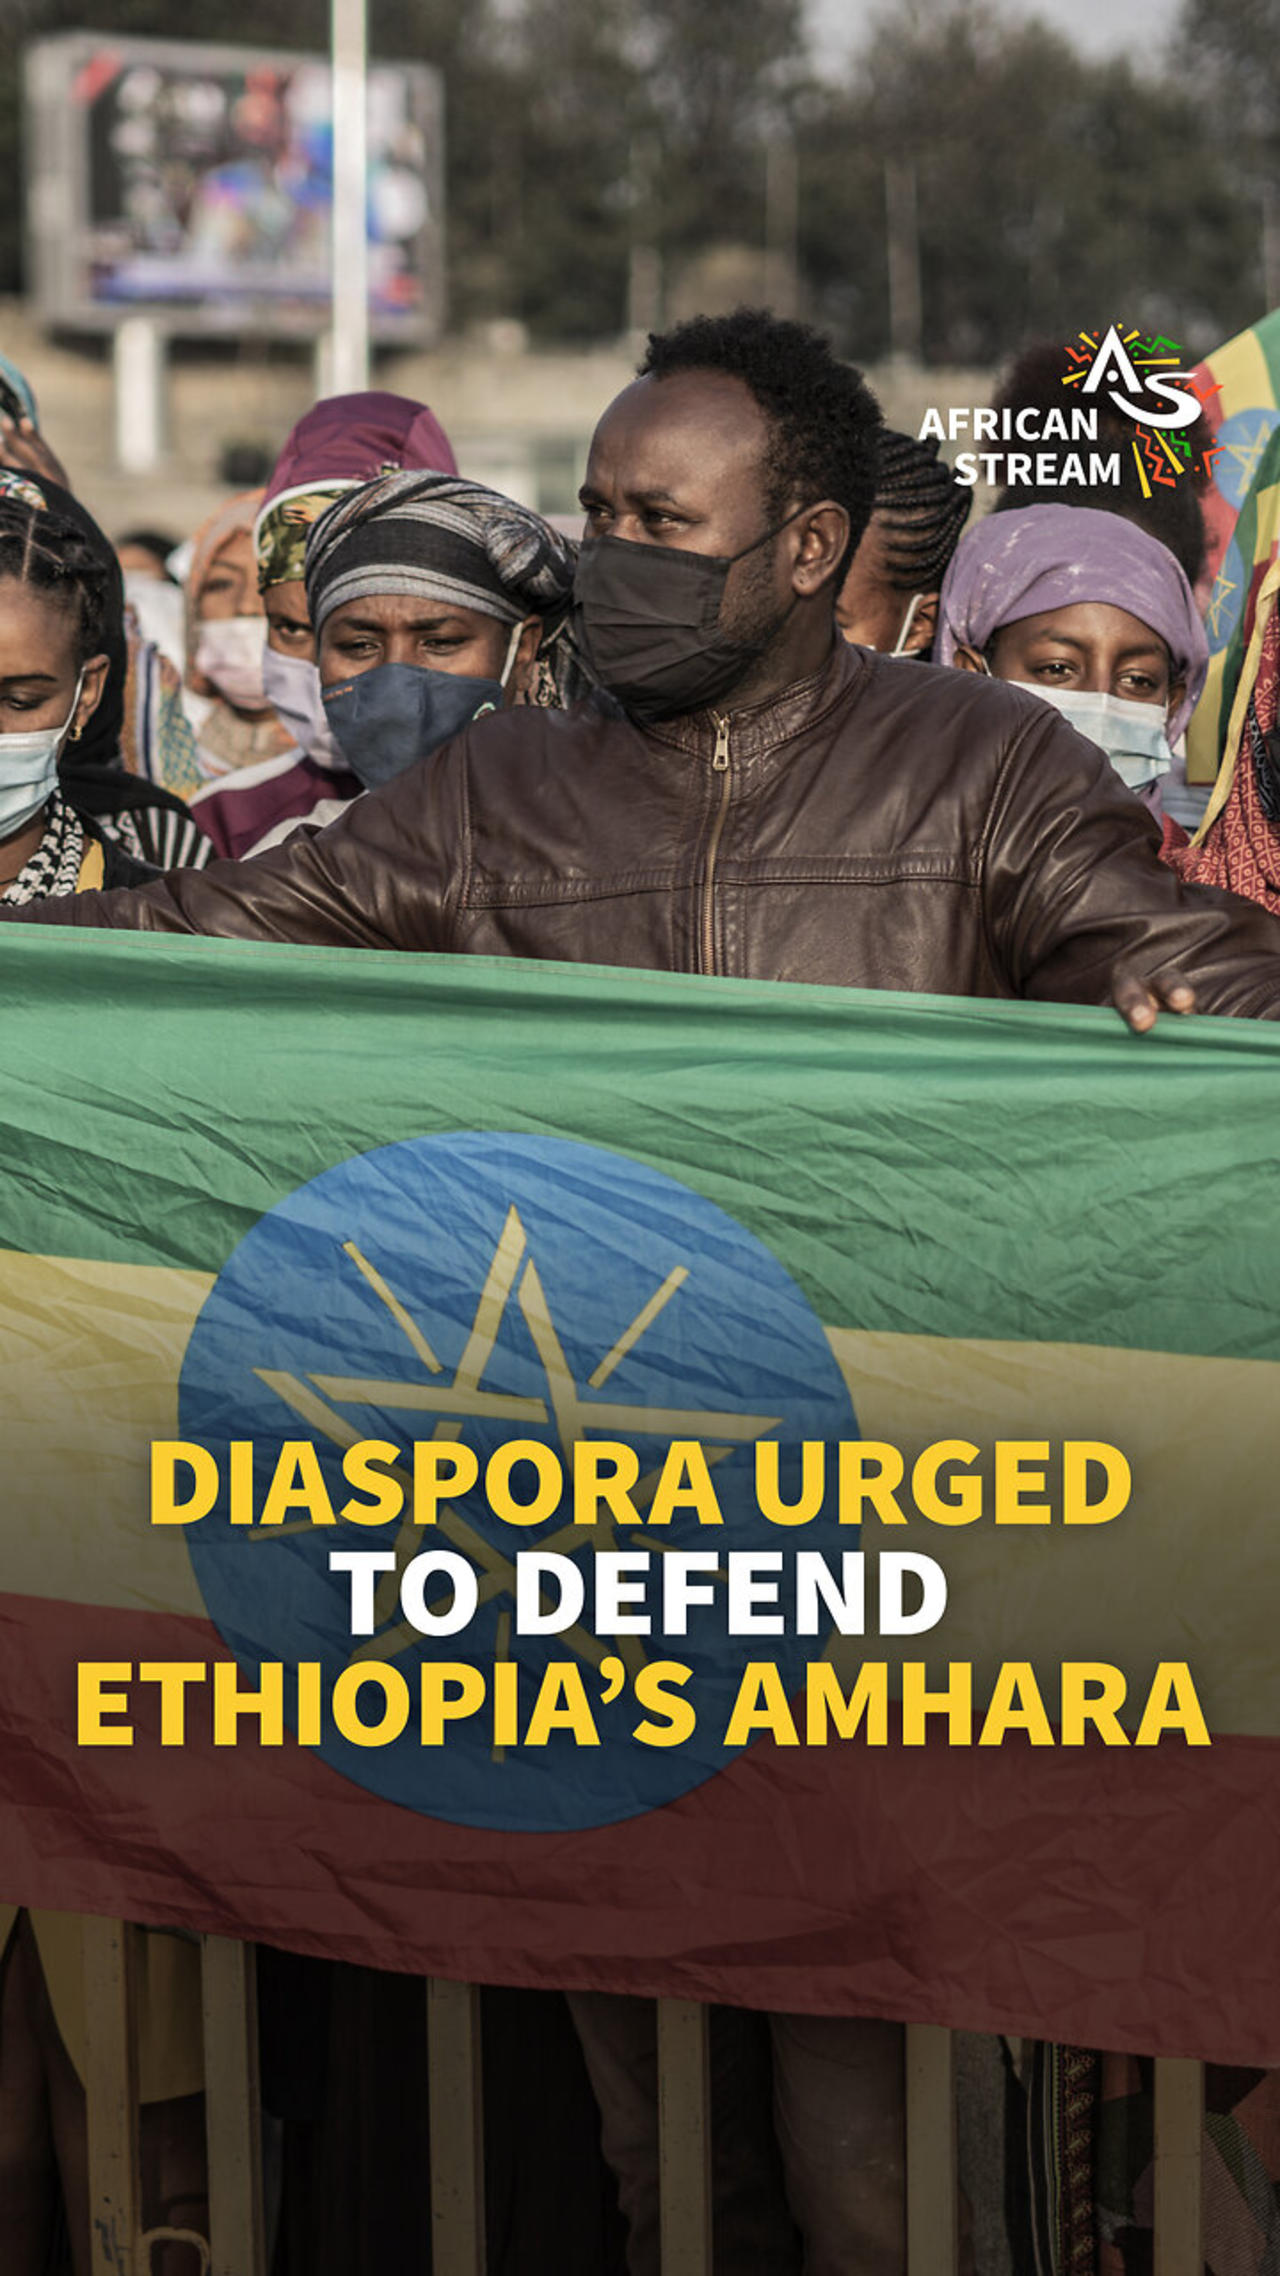 DIASPORA URGED TO DEFEND ETHIOPIA’S AMHARA